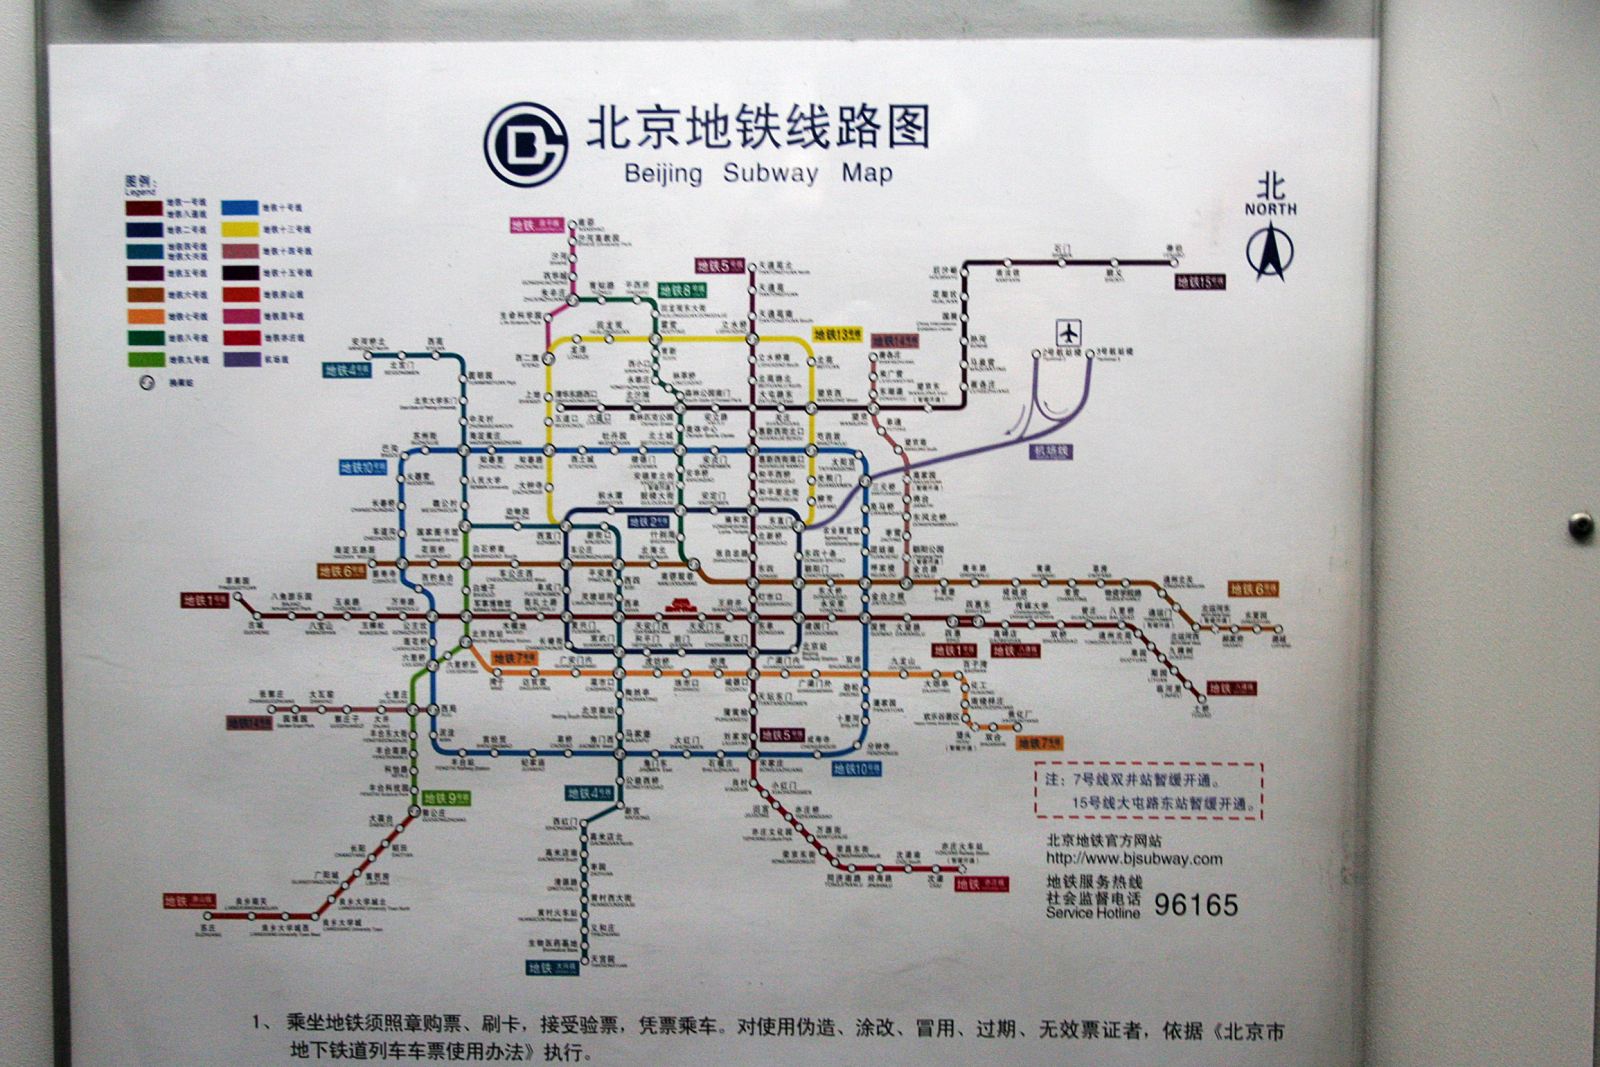 Наприклад, пекінський метрополітен складається з 18 ліній і більше 300 станцій